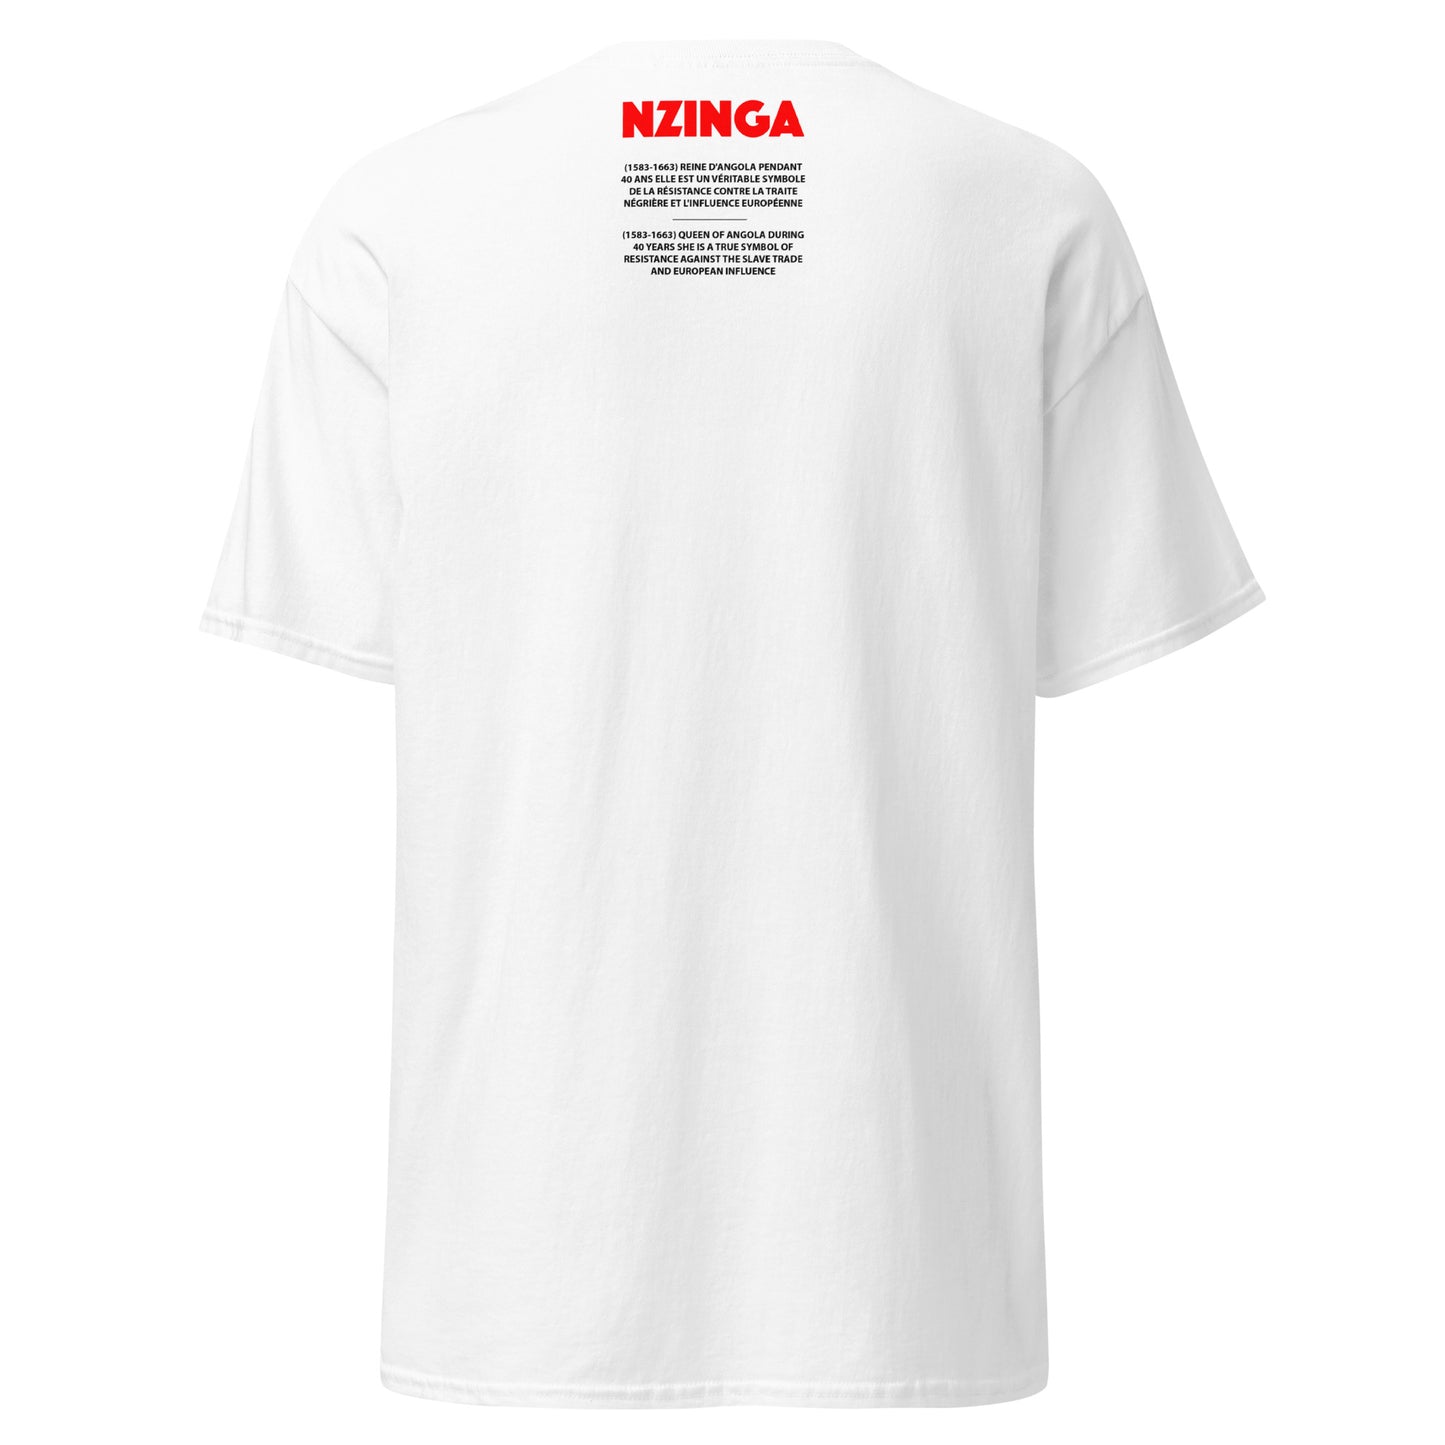 NZINGA (T-Shirt Miroir)